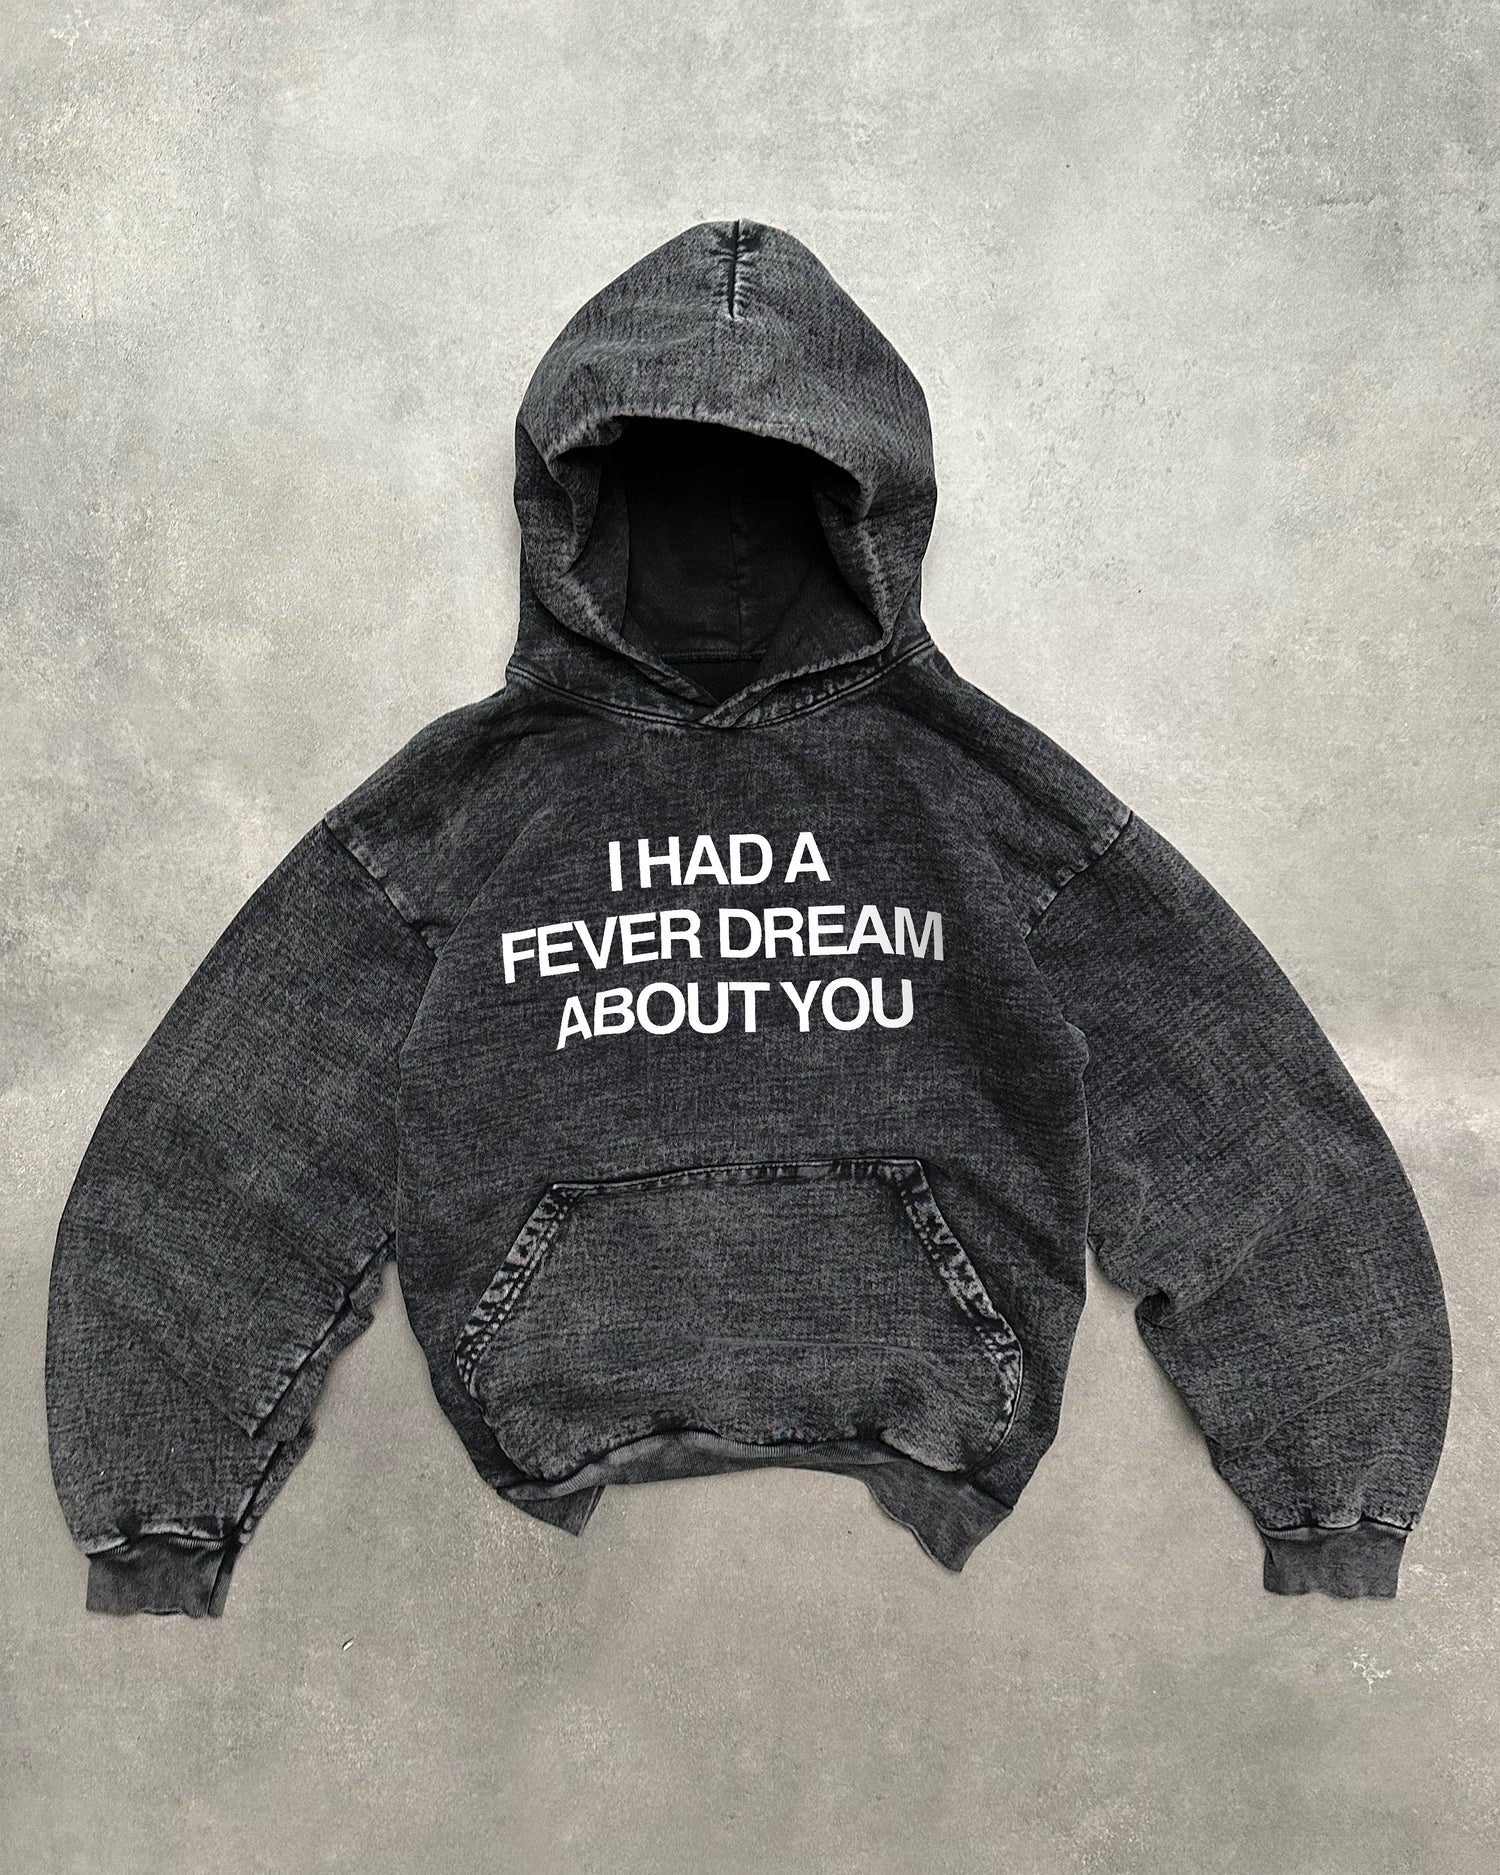 "FEVER DREAM"